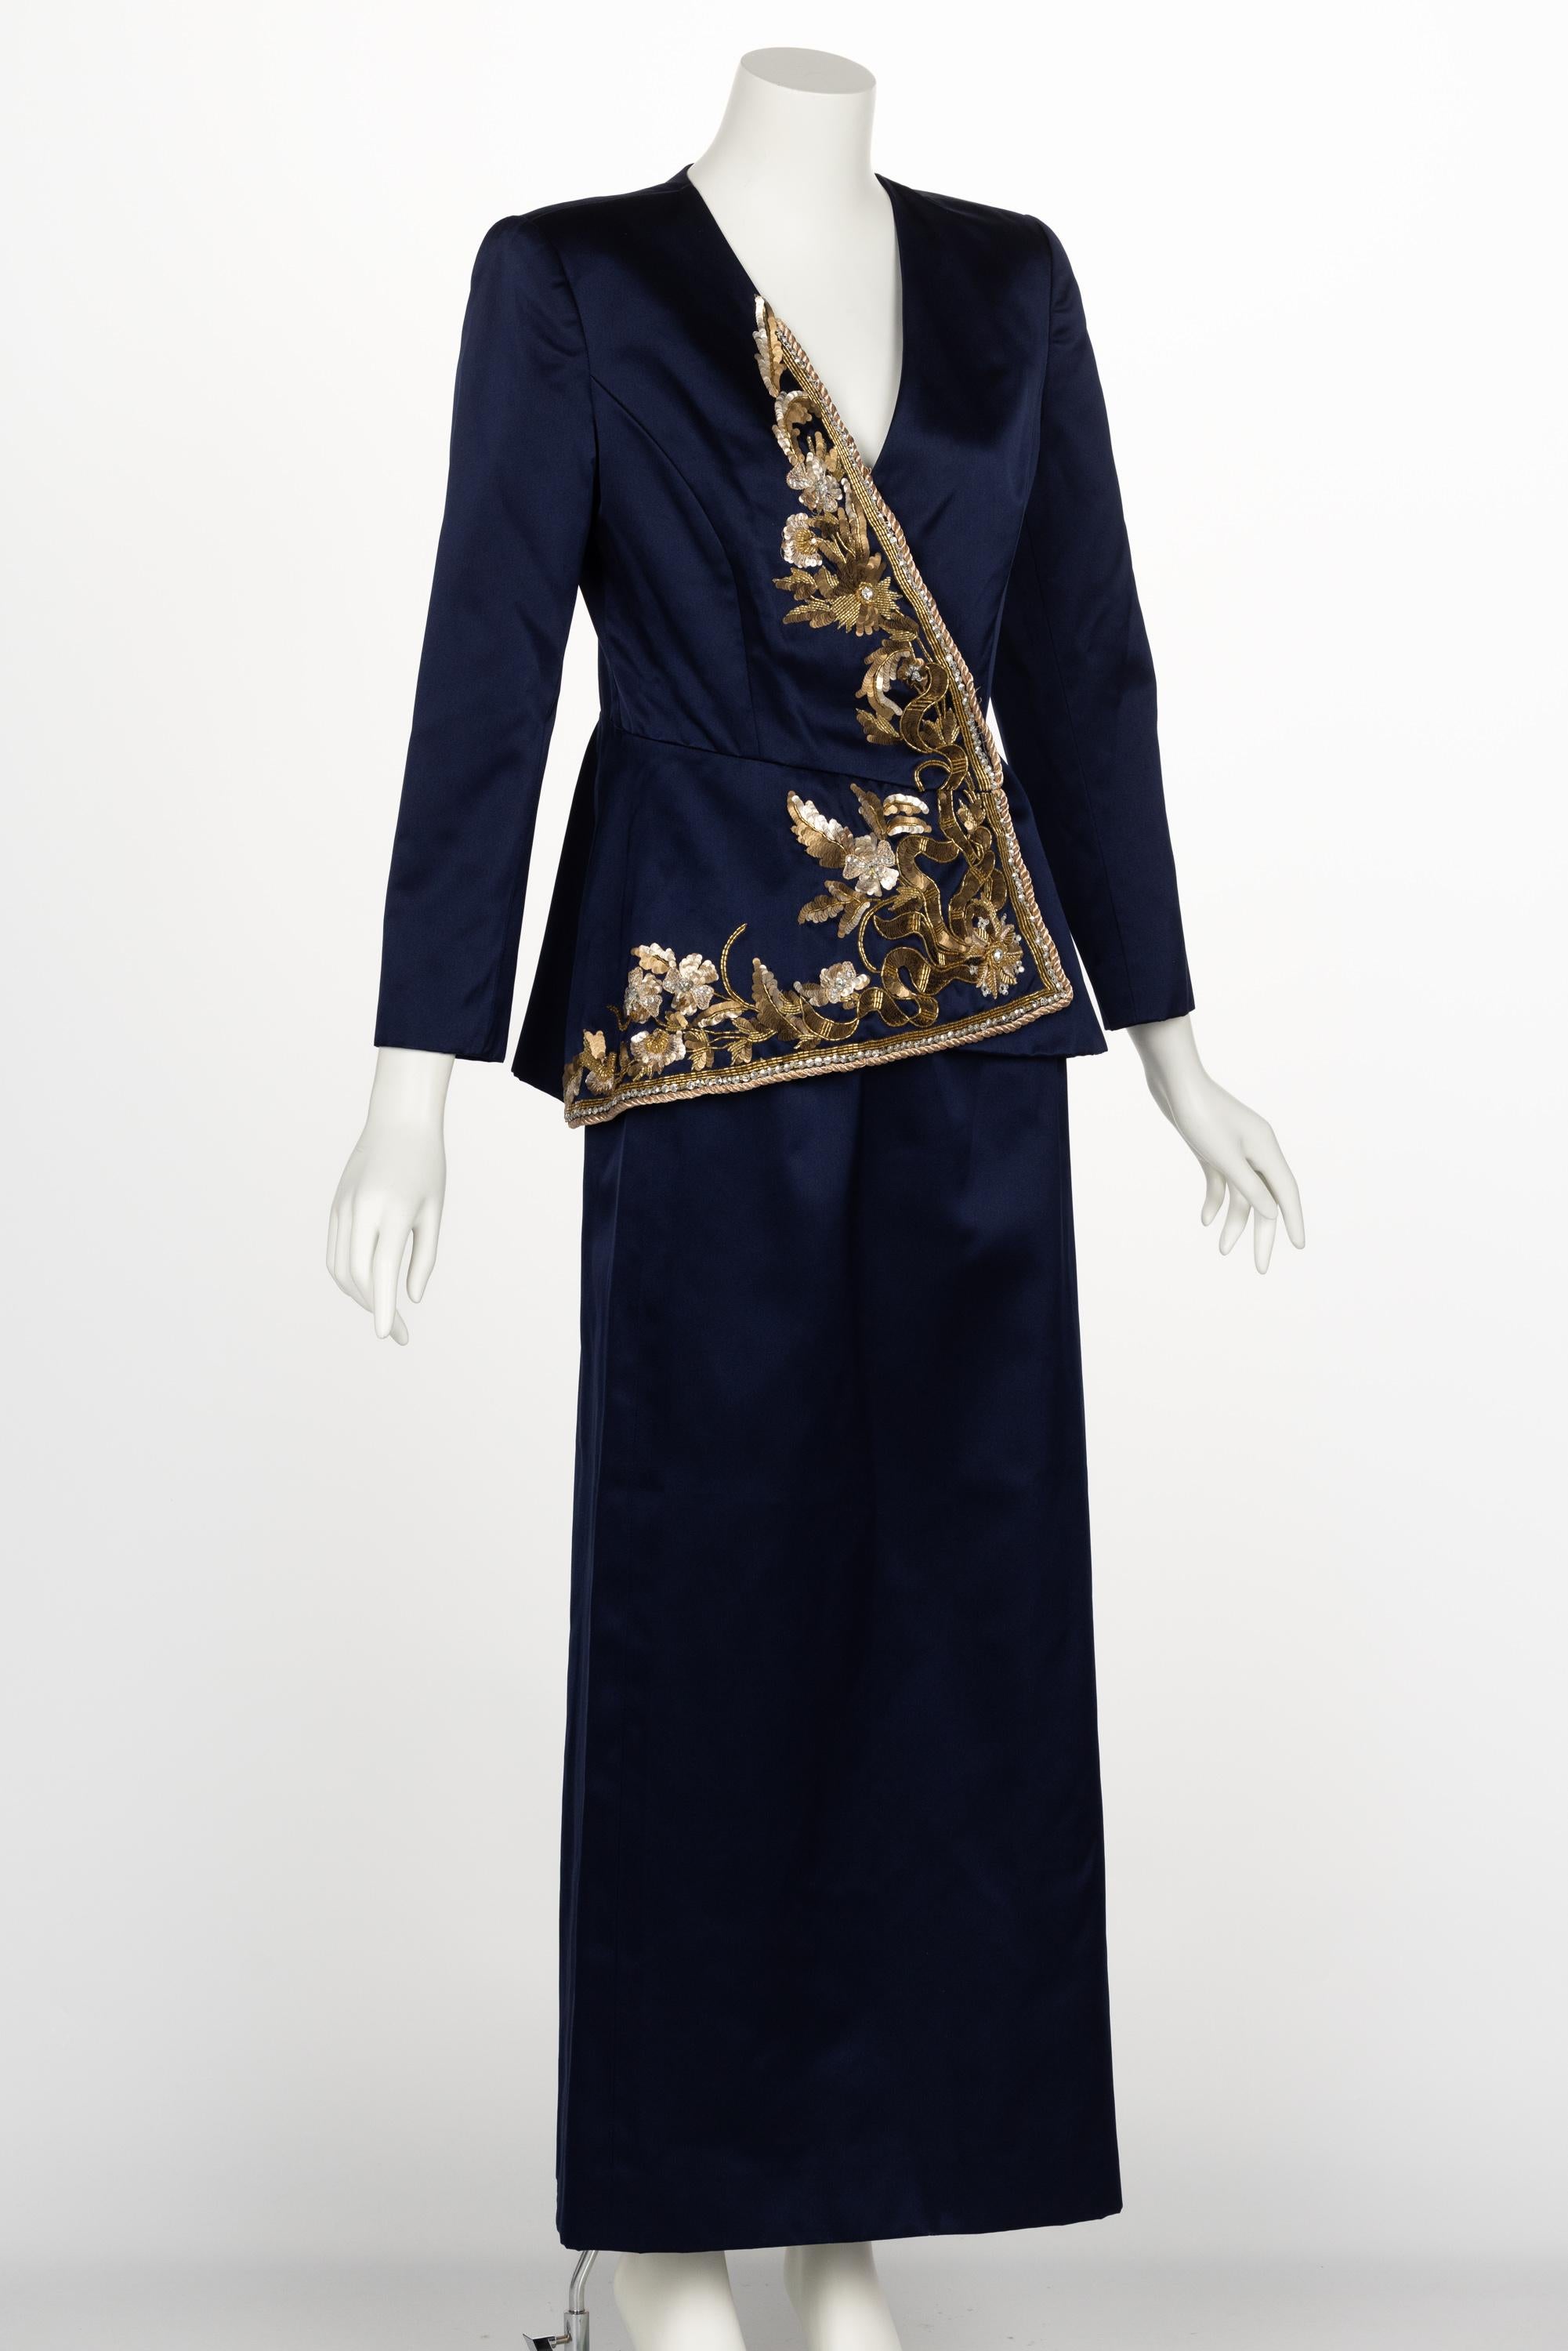 Vintage Oscar de la Renta Navy Satin Gold Embellished Skirt Suit F/W 1992 In Excellent Condition For Sale In Boca Raton, FL